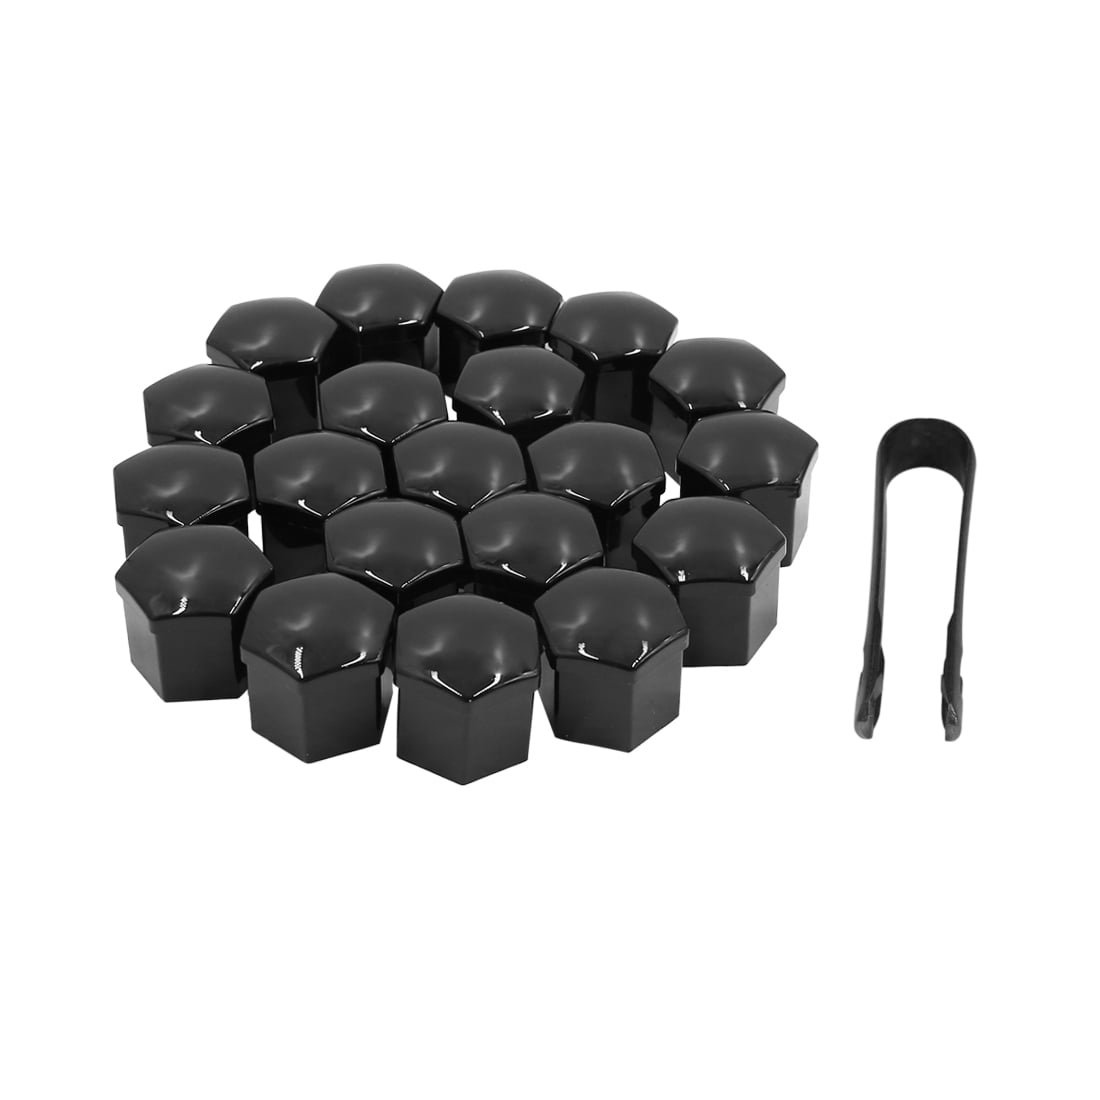 Bolt Head 21mm Black Covers Caps Plastic Hexagonal Protectors 20 Car Wheel Nut 